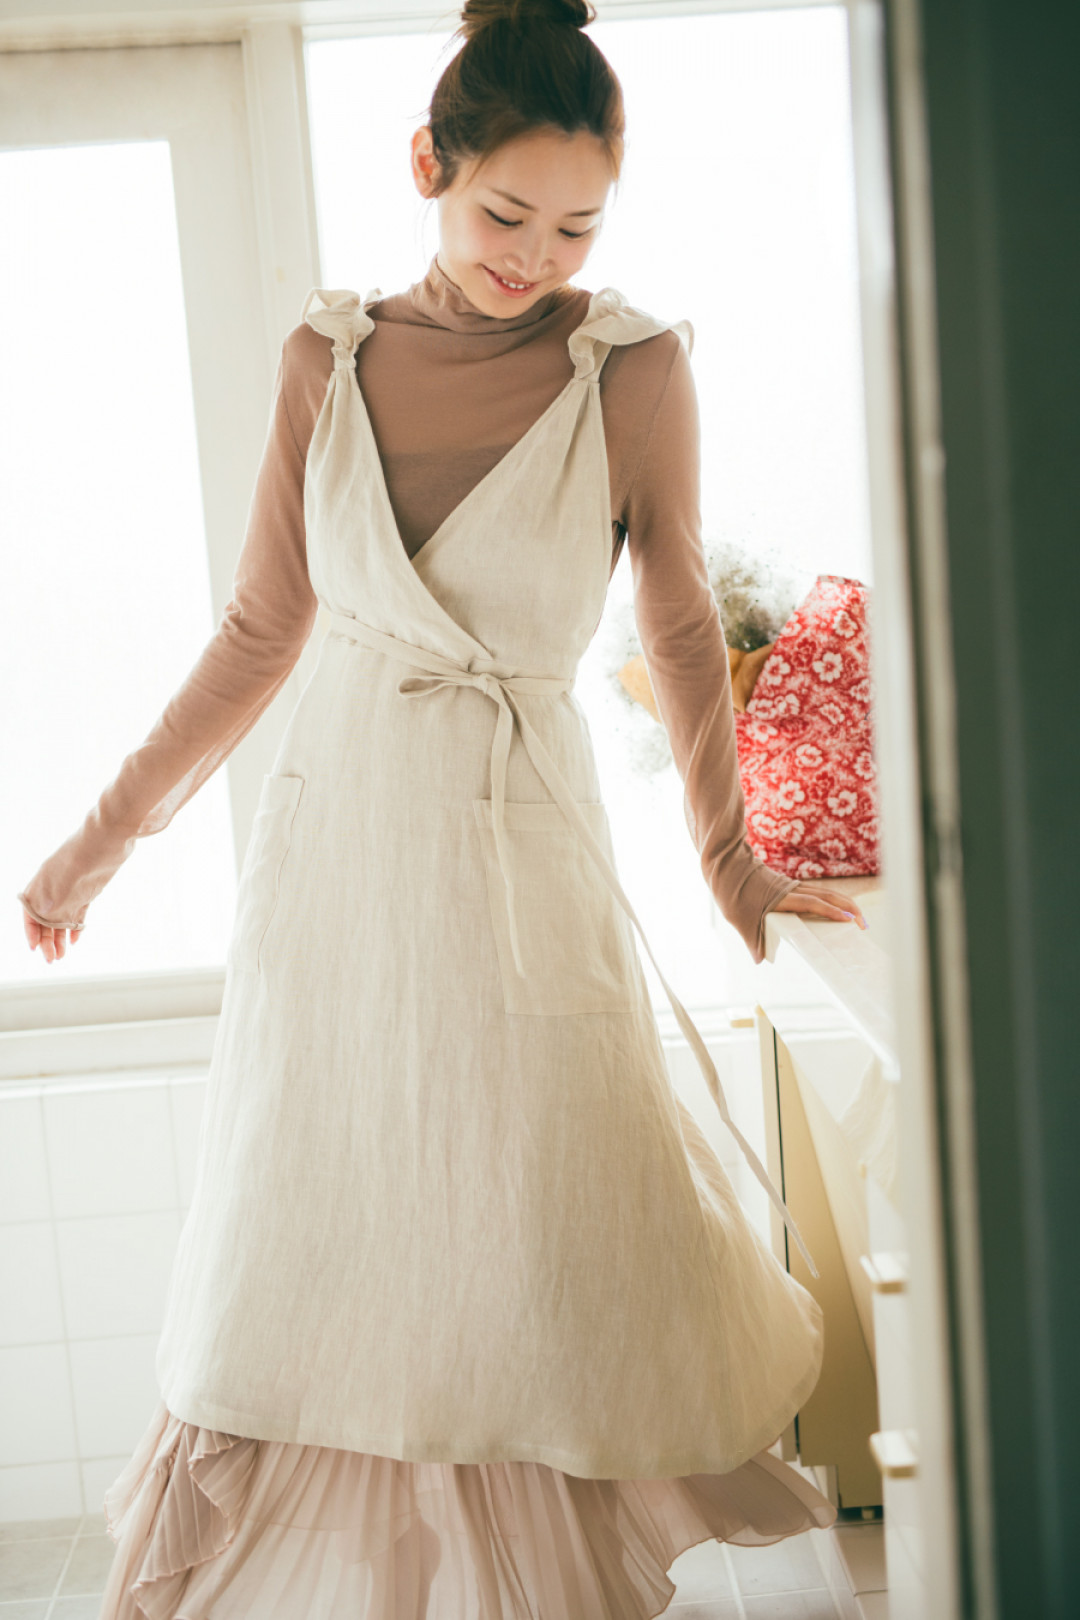 モデル・タレントの紗栄子が魅せる 初のワンマイルドレス。スナイデルカプセルコレクション | PHOTO(14/19) | FASHION